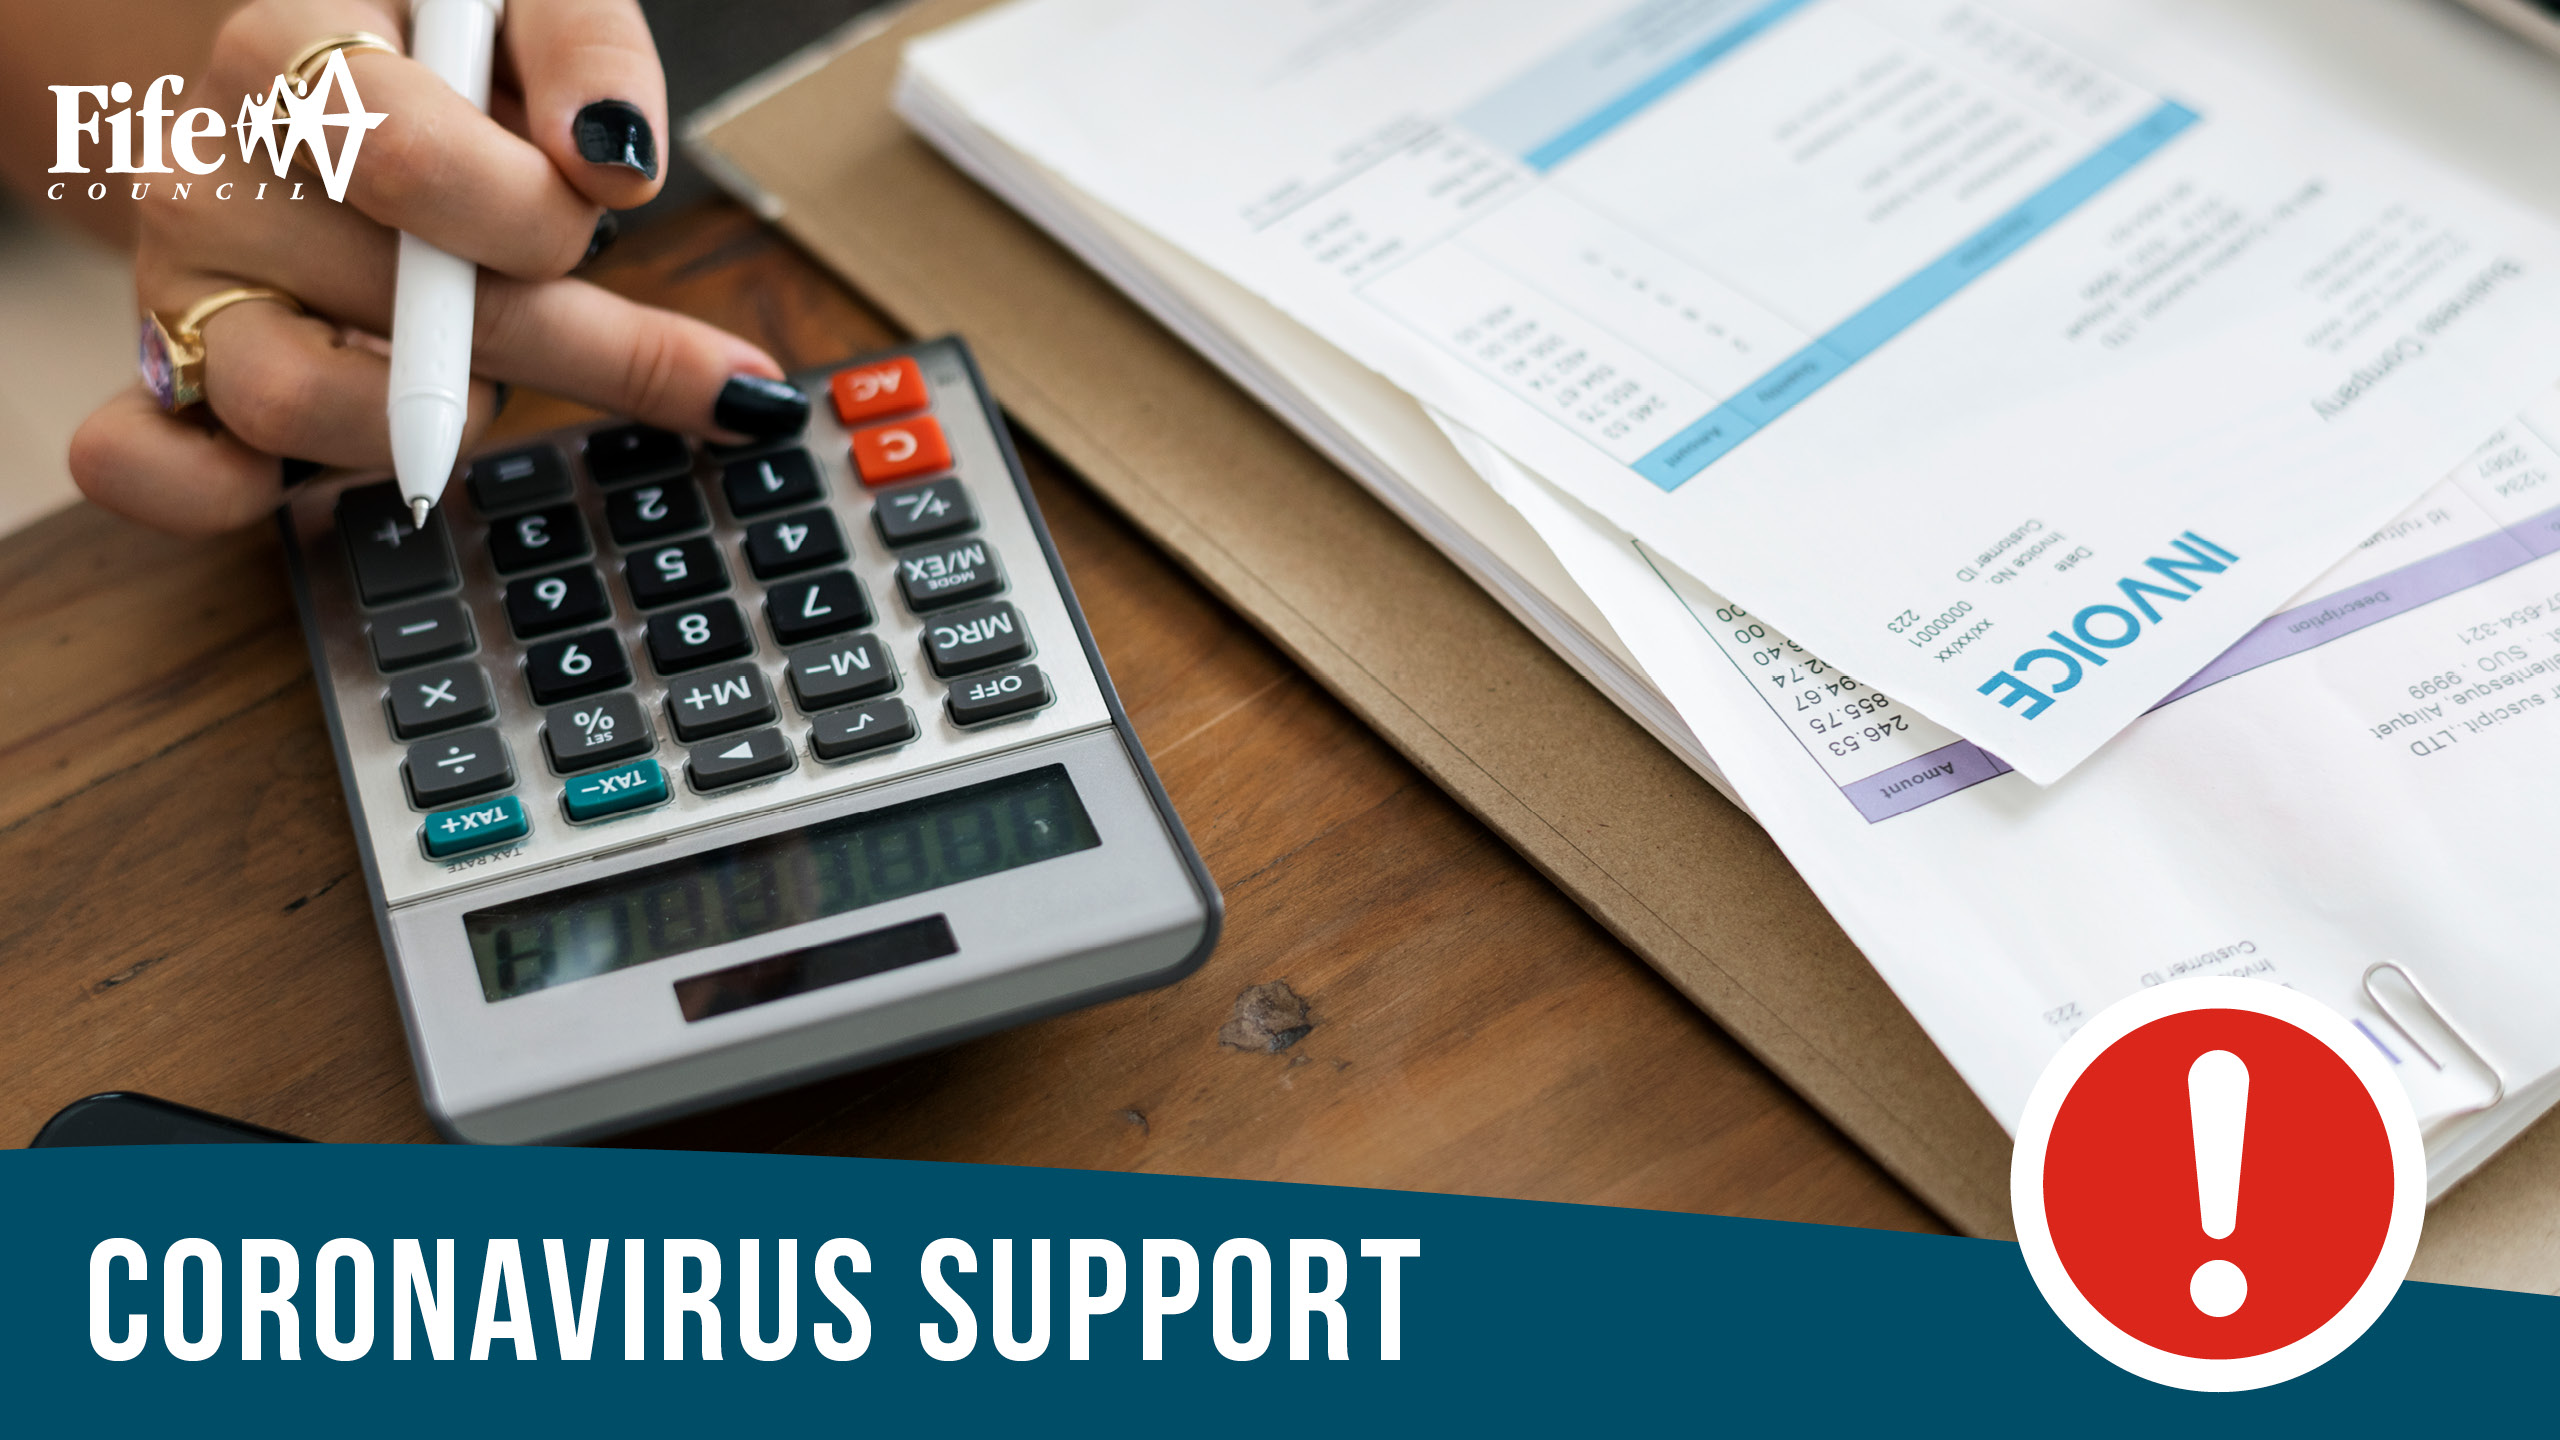 Job support during coronavirus